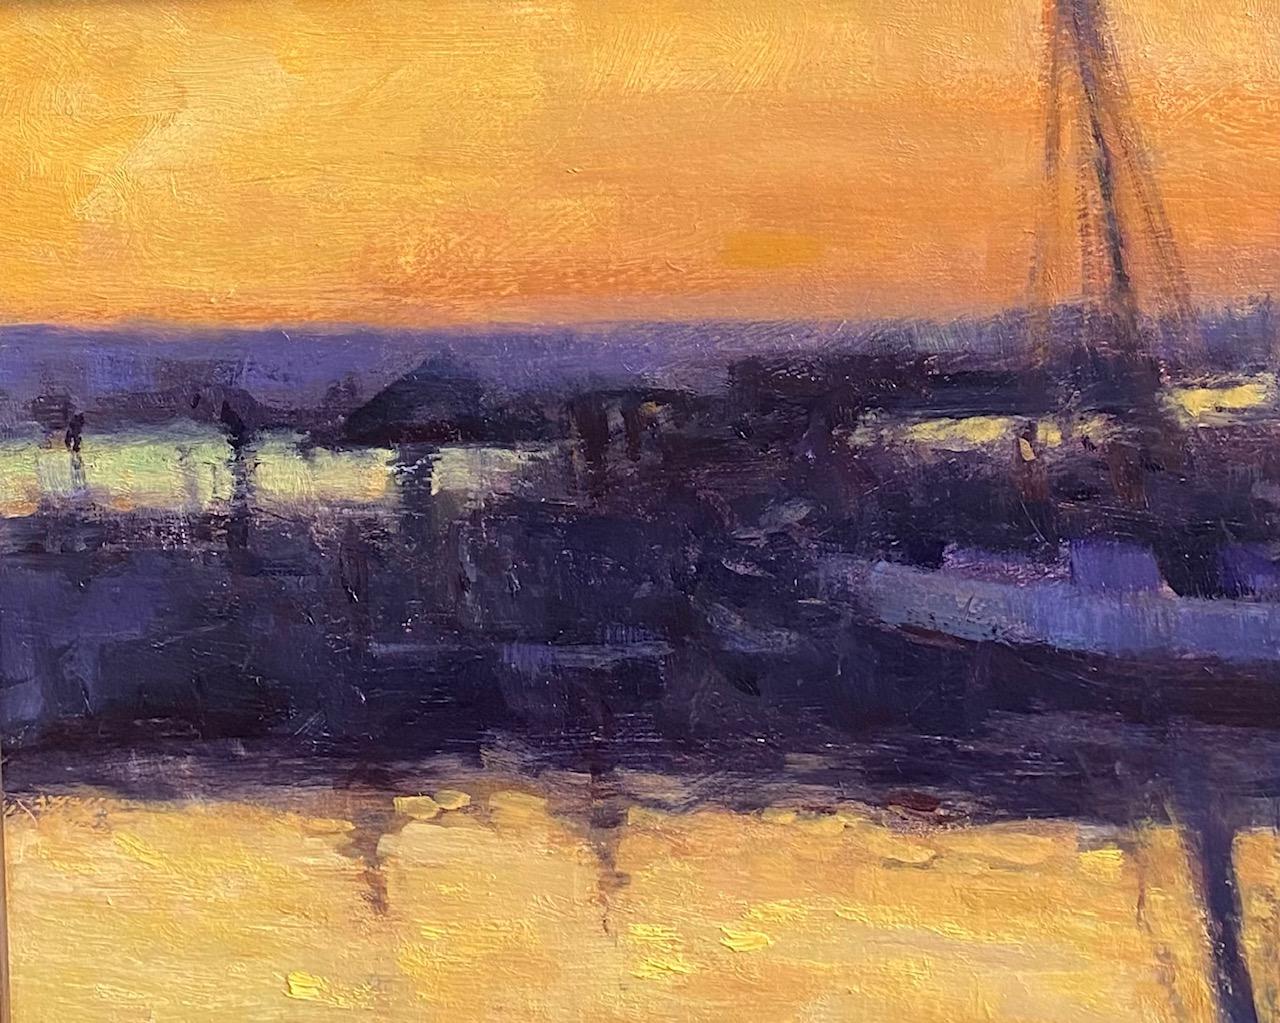 Sunrise Tug, paysage marin nocturne réaliste original et impressionniste - Noir Landscape Painting par Neal Hughes